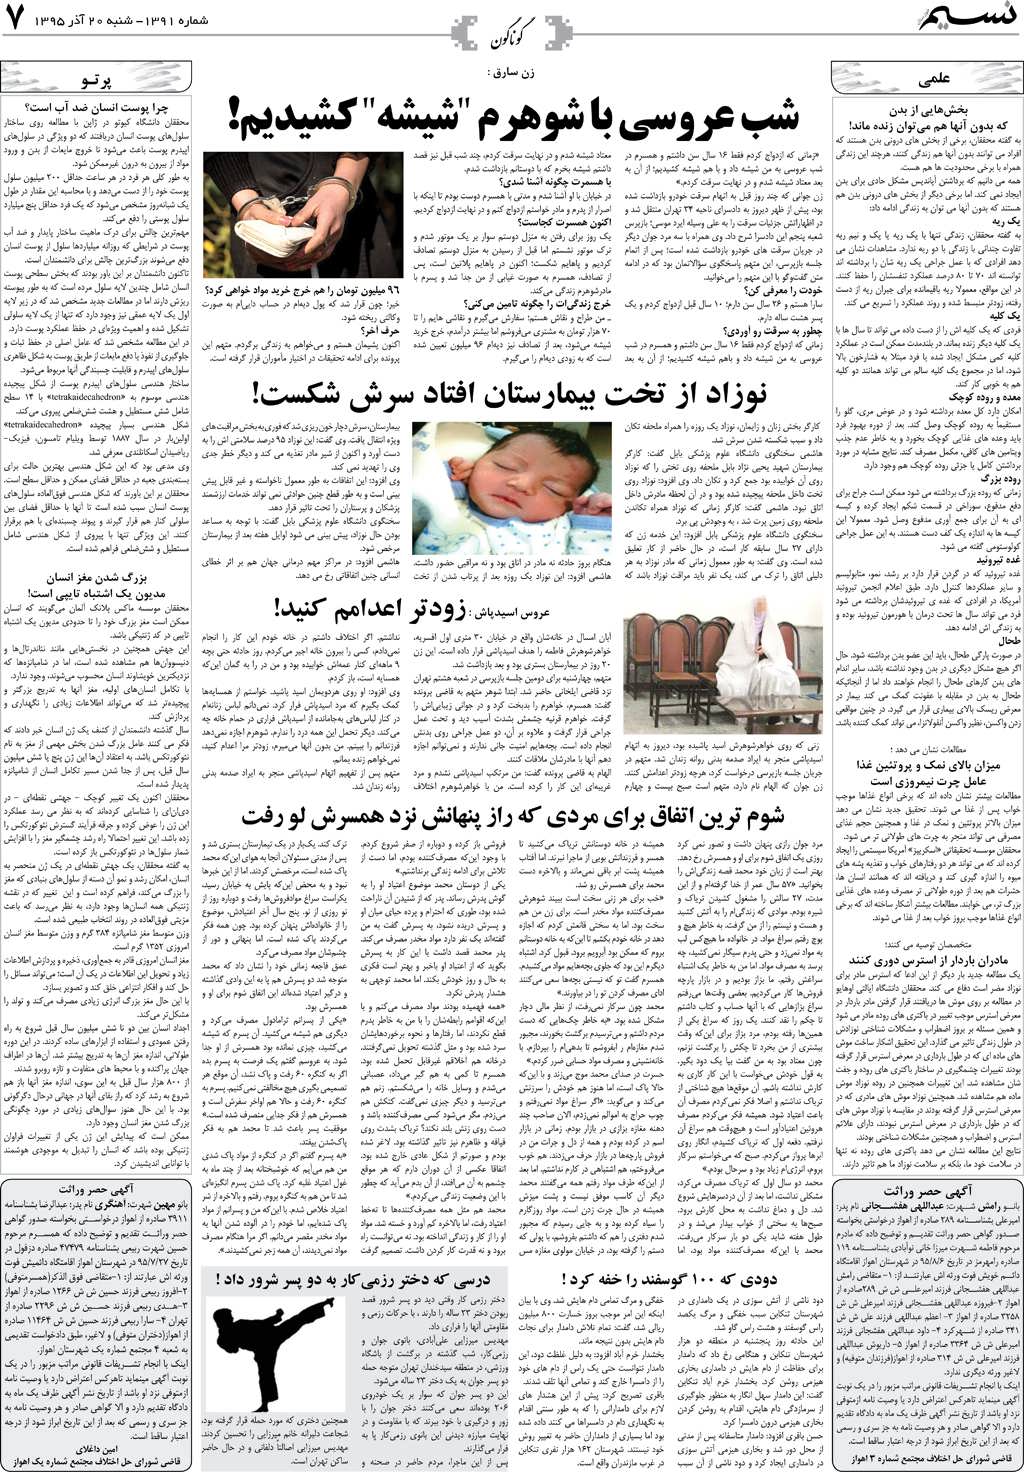 صفحه گوناگون روزنامه نسیم شماره 1391